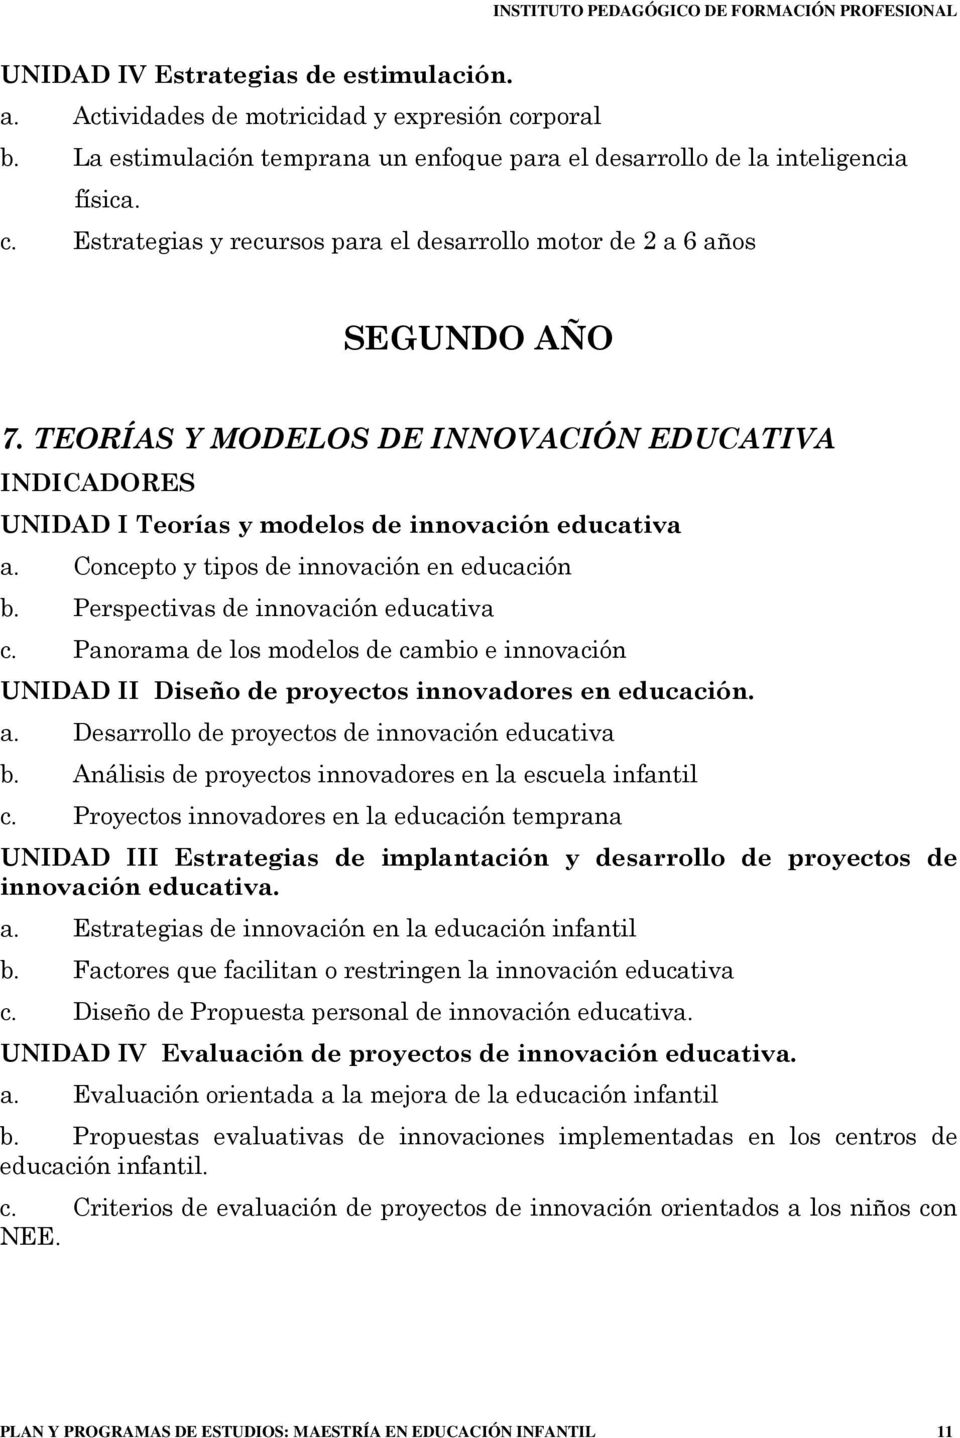 Panorama de los modelos de cambio e innovación UNIDAD II Diseño de proyectos innovadores en educación. a. Desarrollo de proyectos de innovación educativa b.